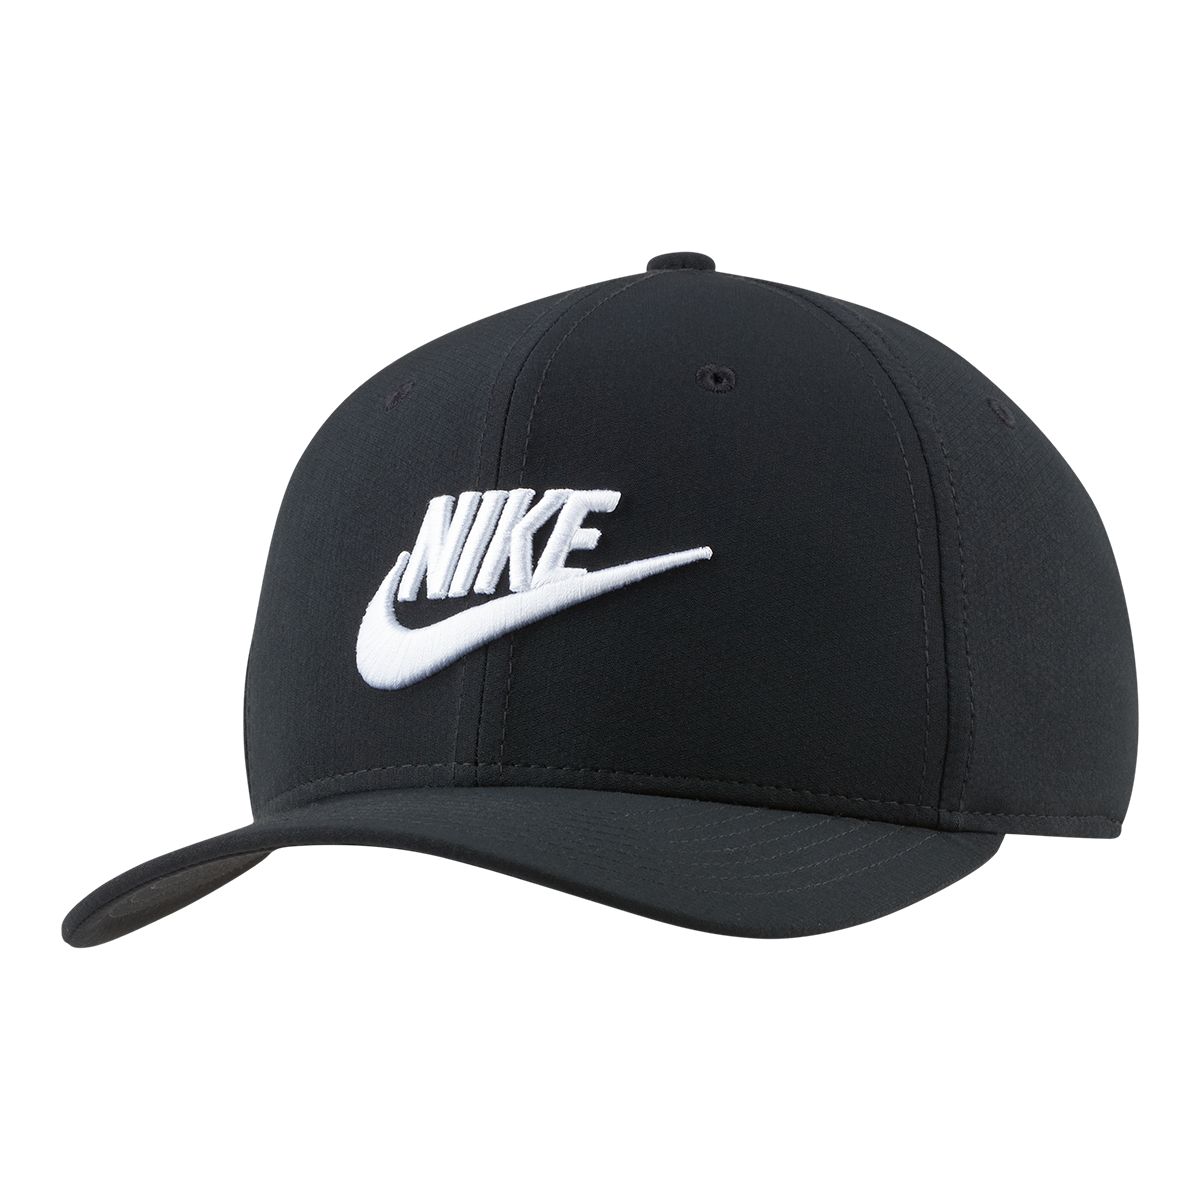 Nike Sportswear Men's Classic99 Futura Stretch Cap | Sportchek